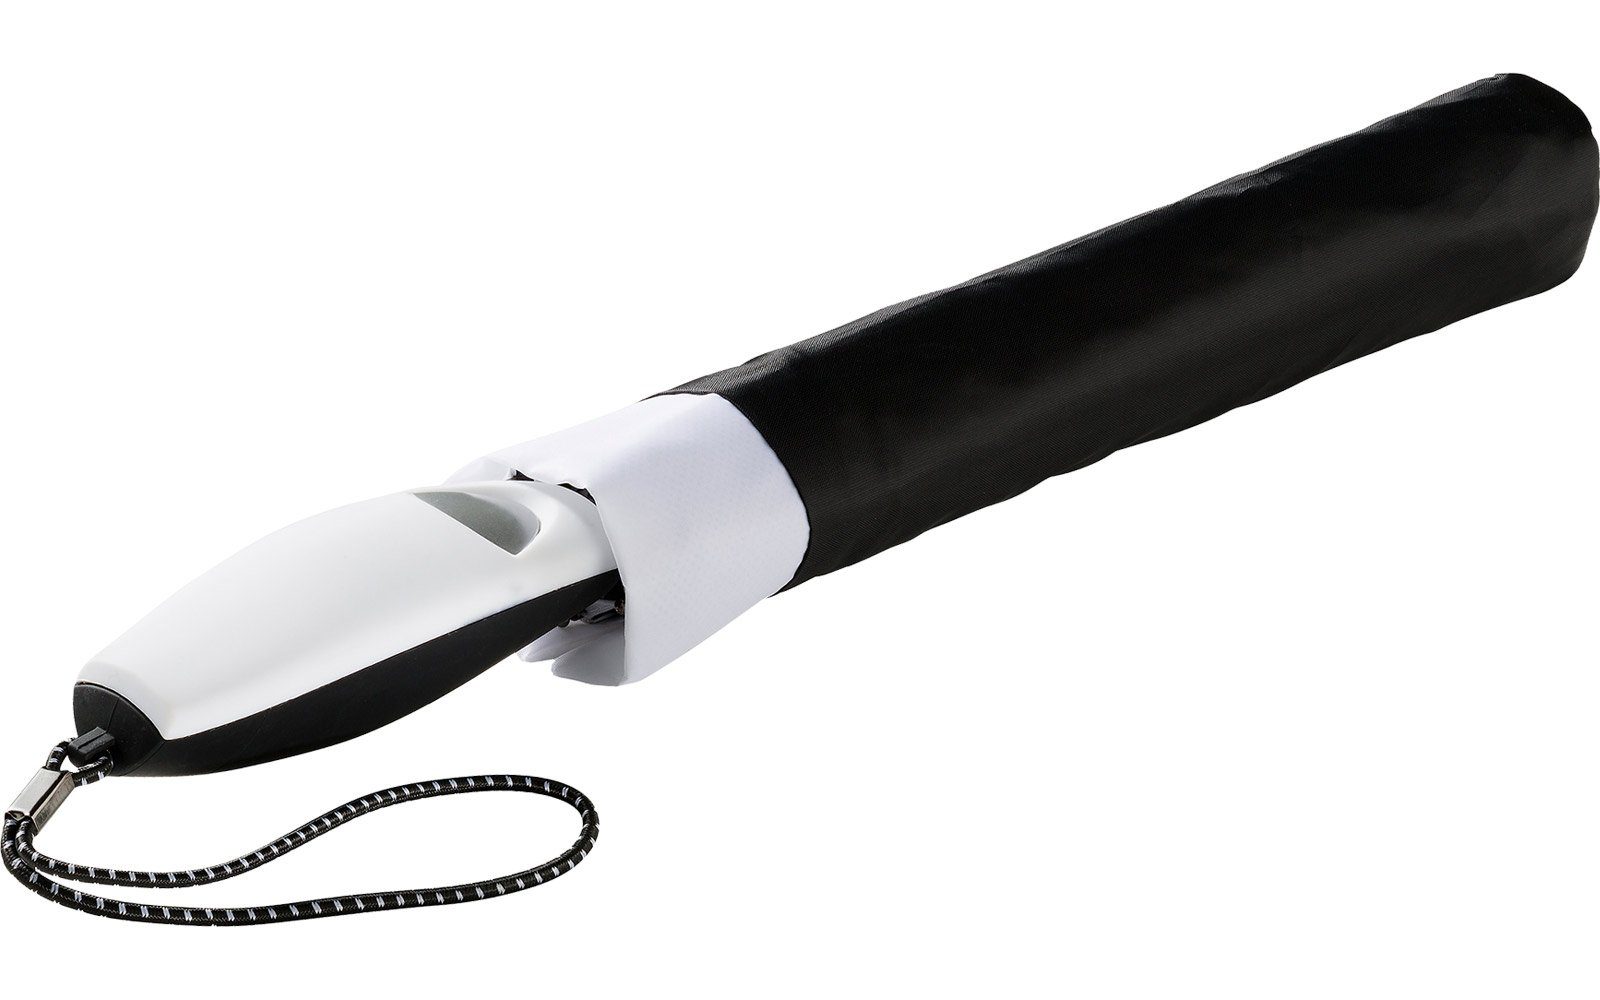 Impliva Taschenregenschirm Falconetti Auf-Automatik farblich schwarz-weiß auffallend Griff, passender